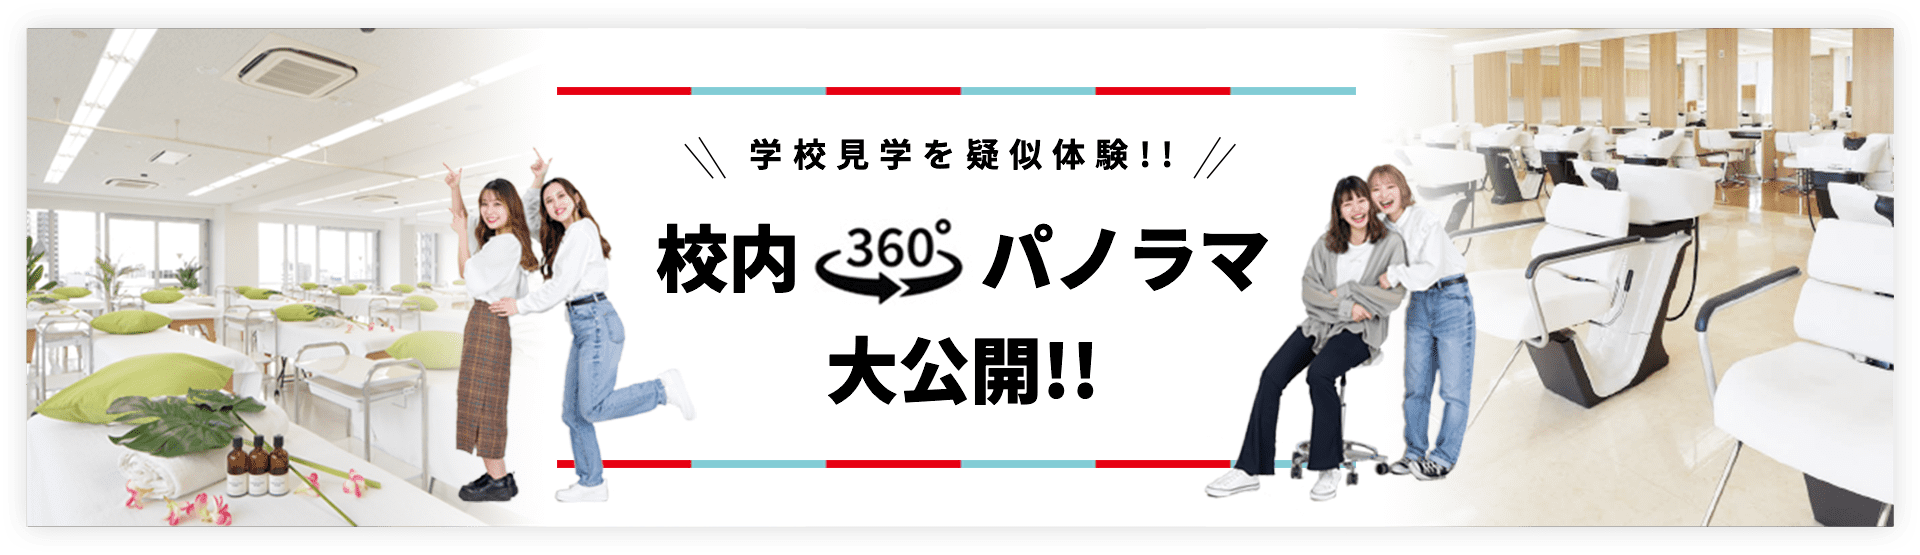 校内360°パノラマ大公開!!